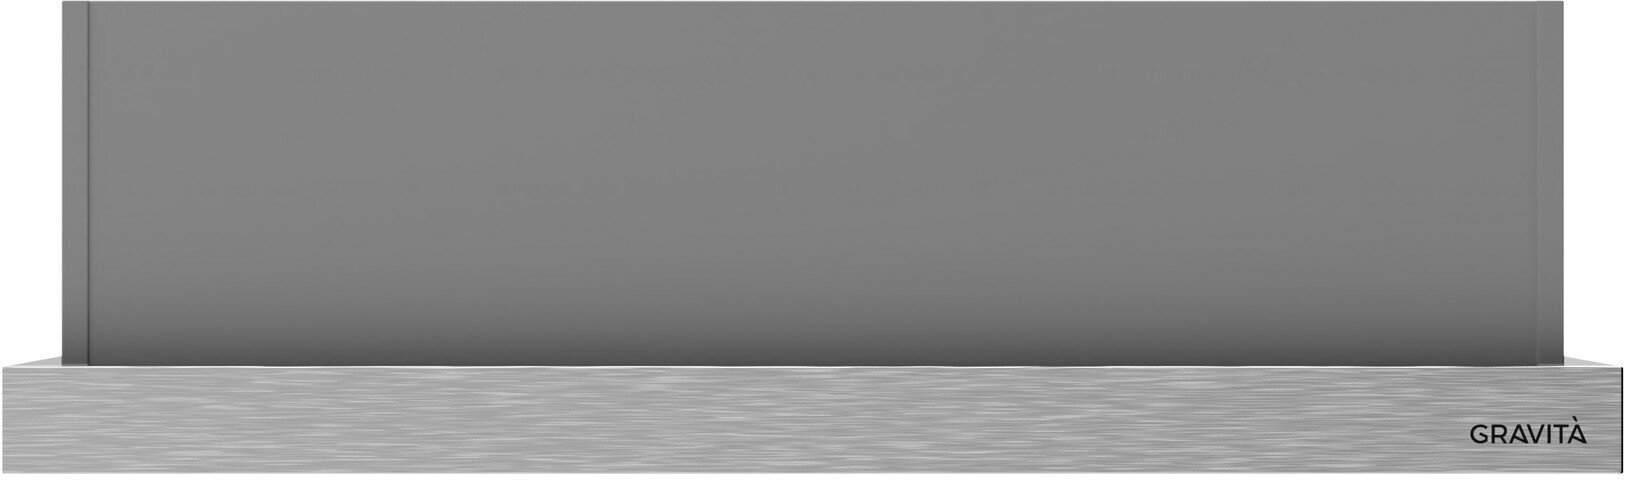 Вытяжка встраиваемая GRAVITA 630ix, 60 см, цвет нержавеющая сталь (угольные фильтры LC9 в комплекте) - фотография № 3